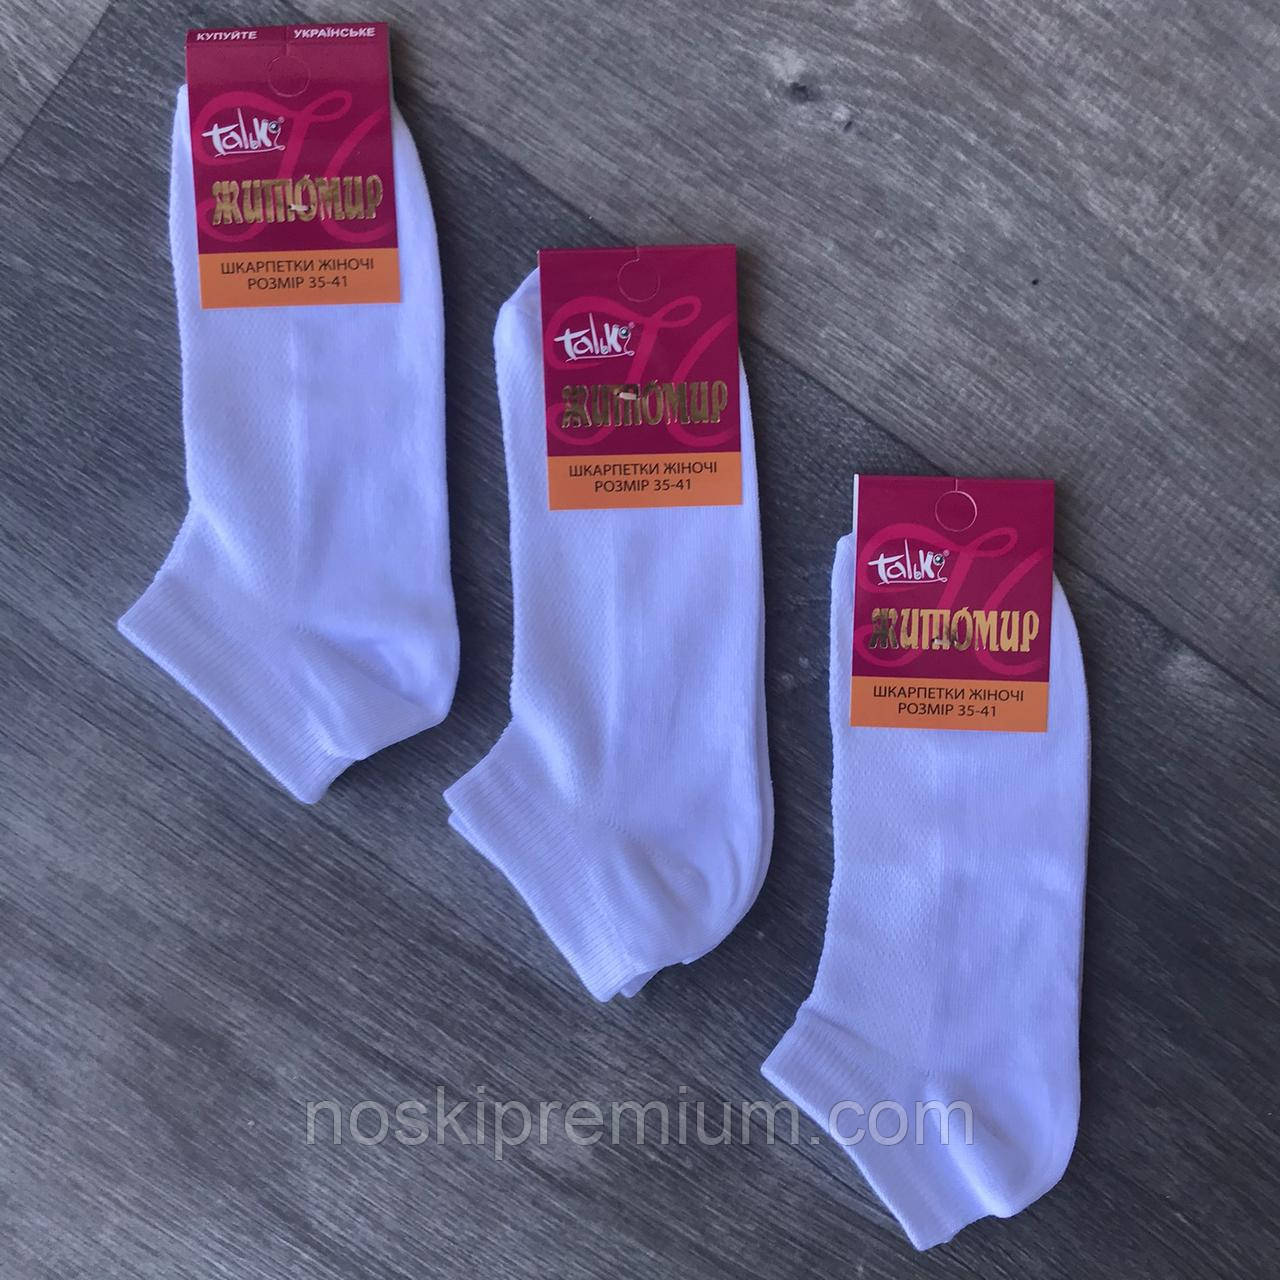 Шкарпетки жіночі короткі бавовна з сіткою Талько, Житомир, розмір 35-41, білі, 02721